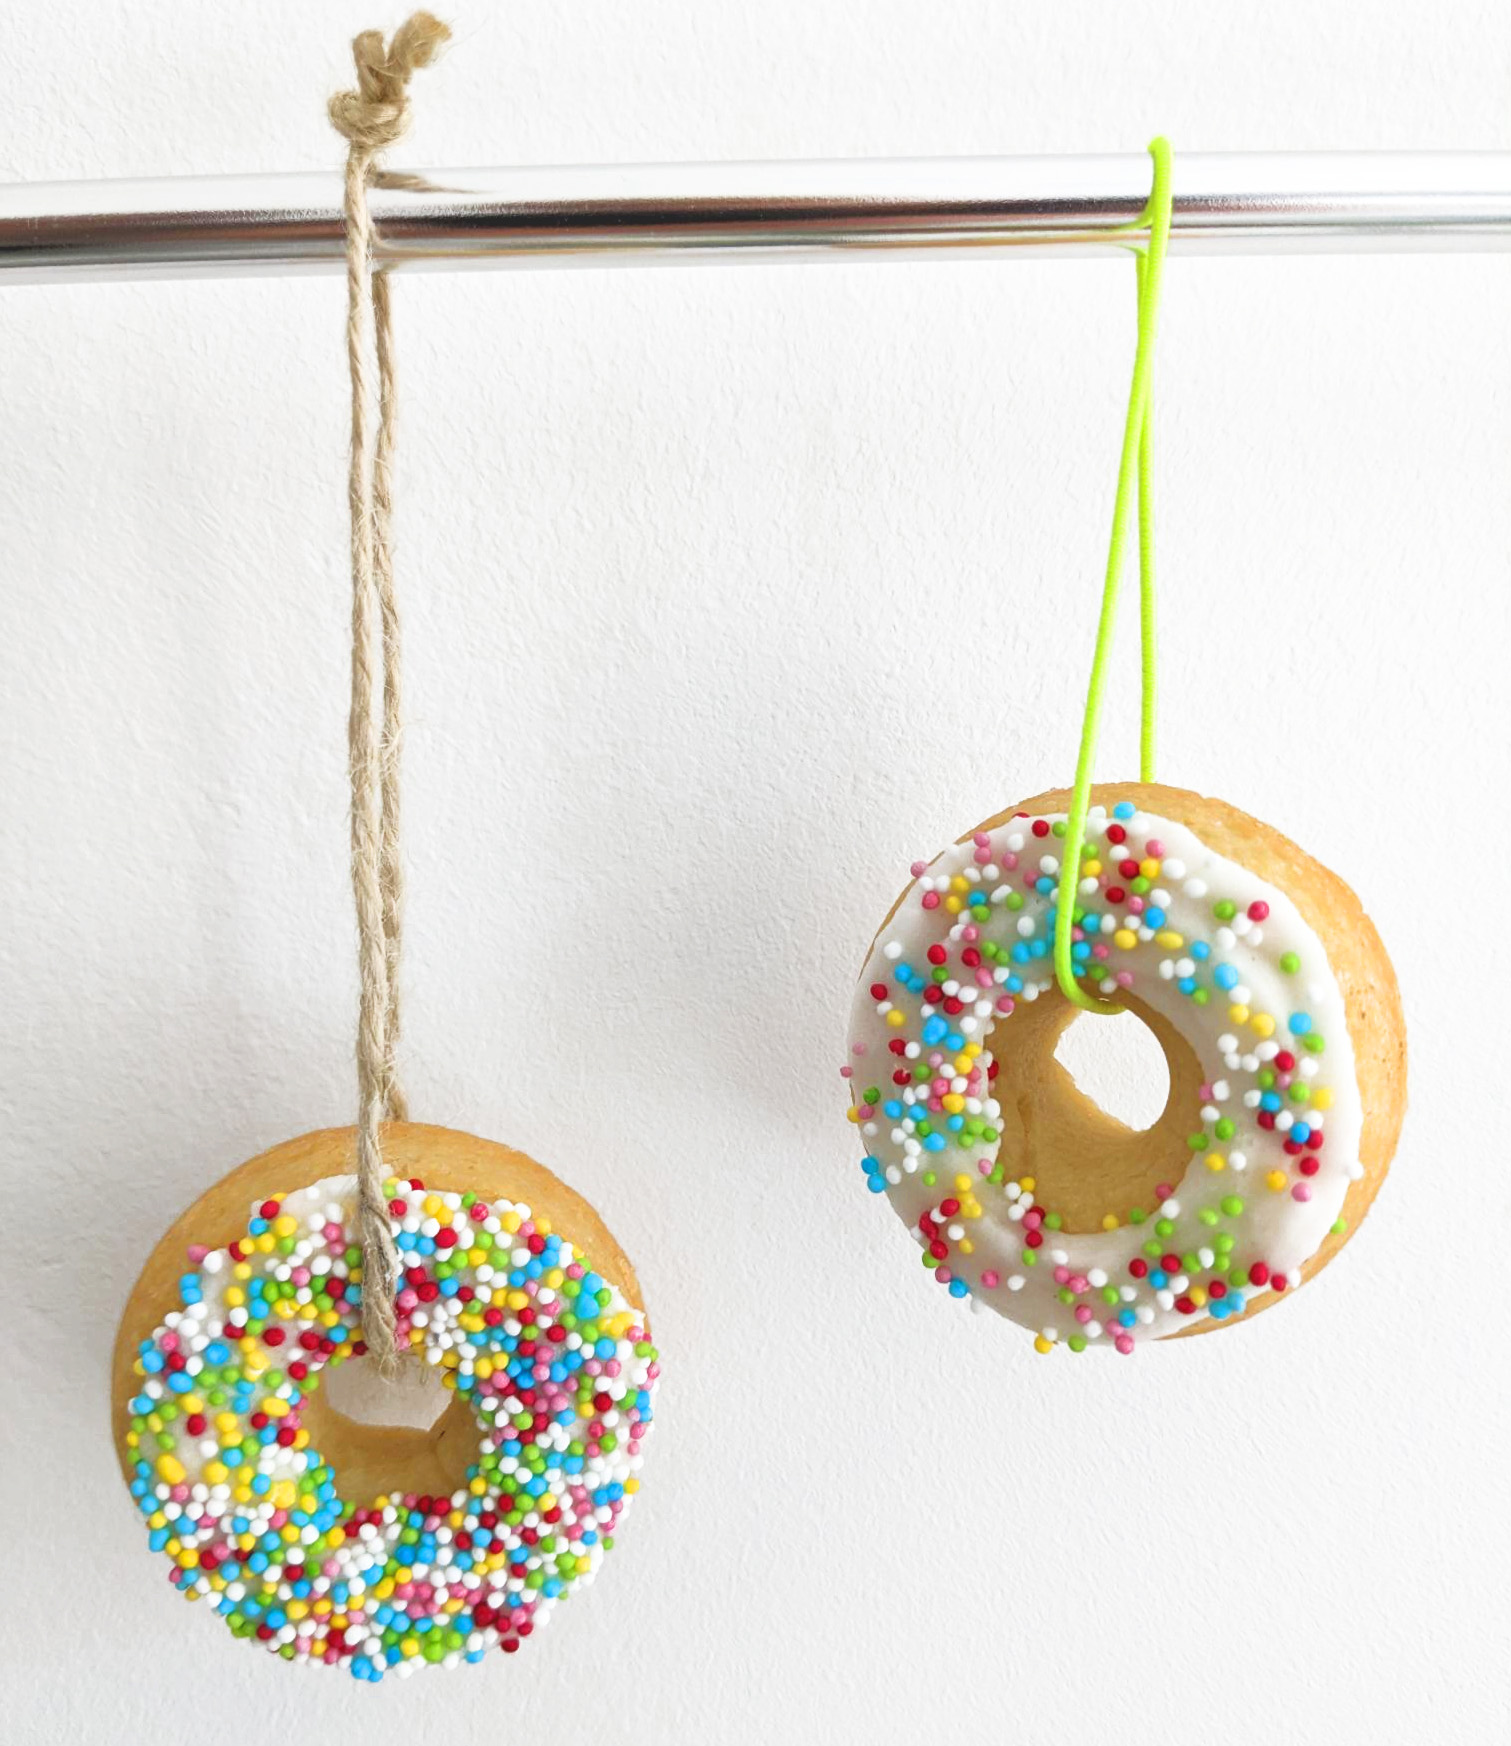 firmenkekse in form eines donuts mit zuckerperlen